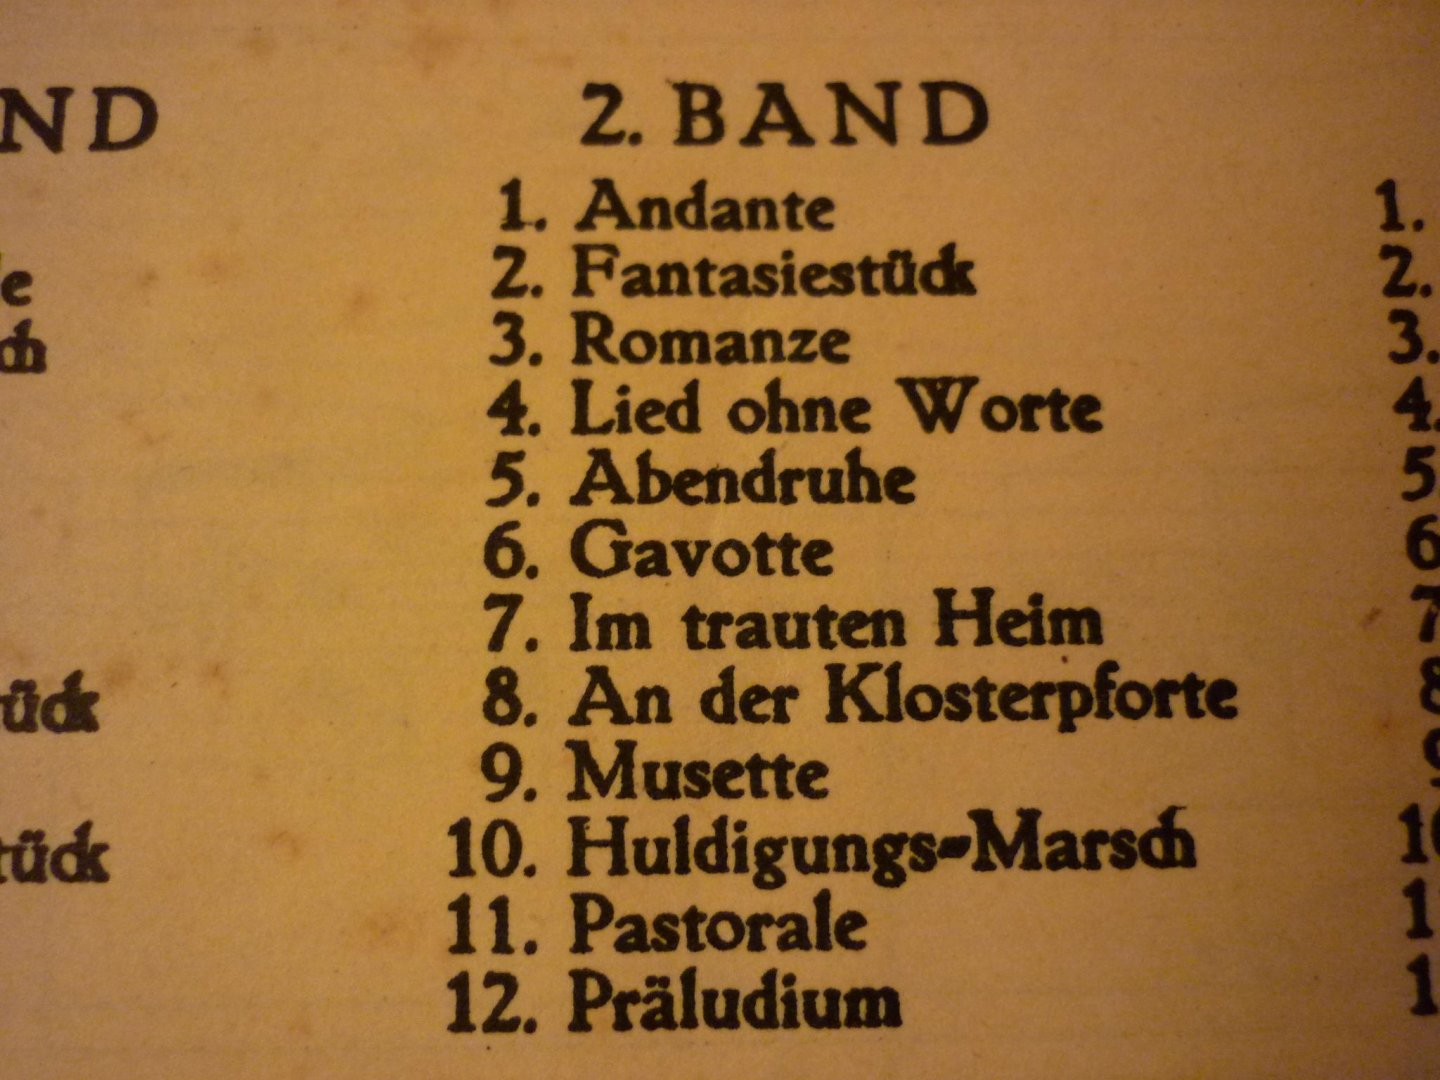 Wenzel; Hermann - Allerseelen - Band II;  120 Vortrags- und Fantasiestucke fur Harmonium